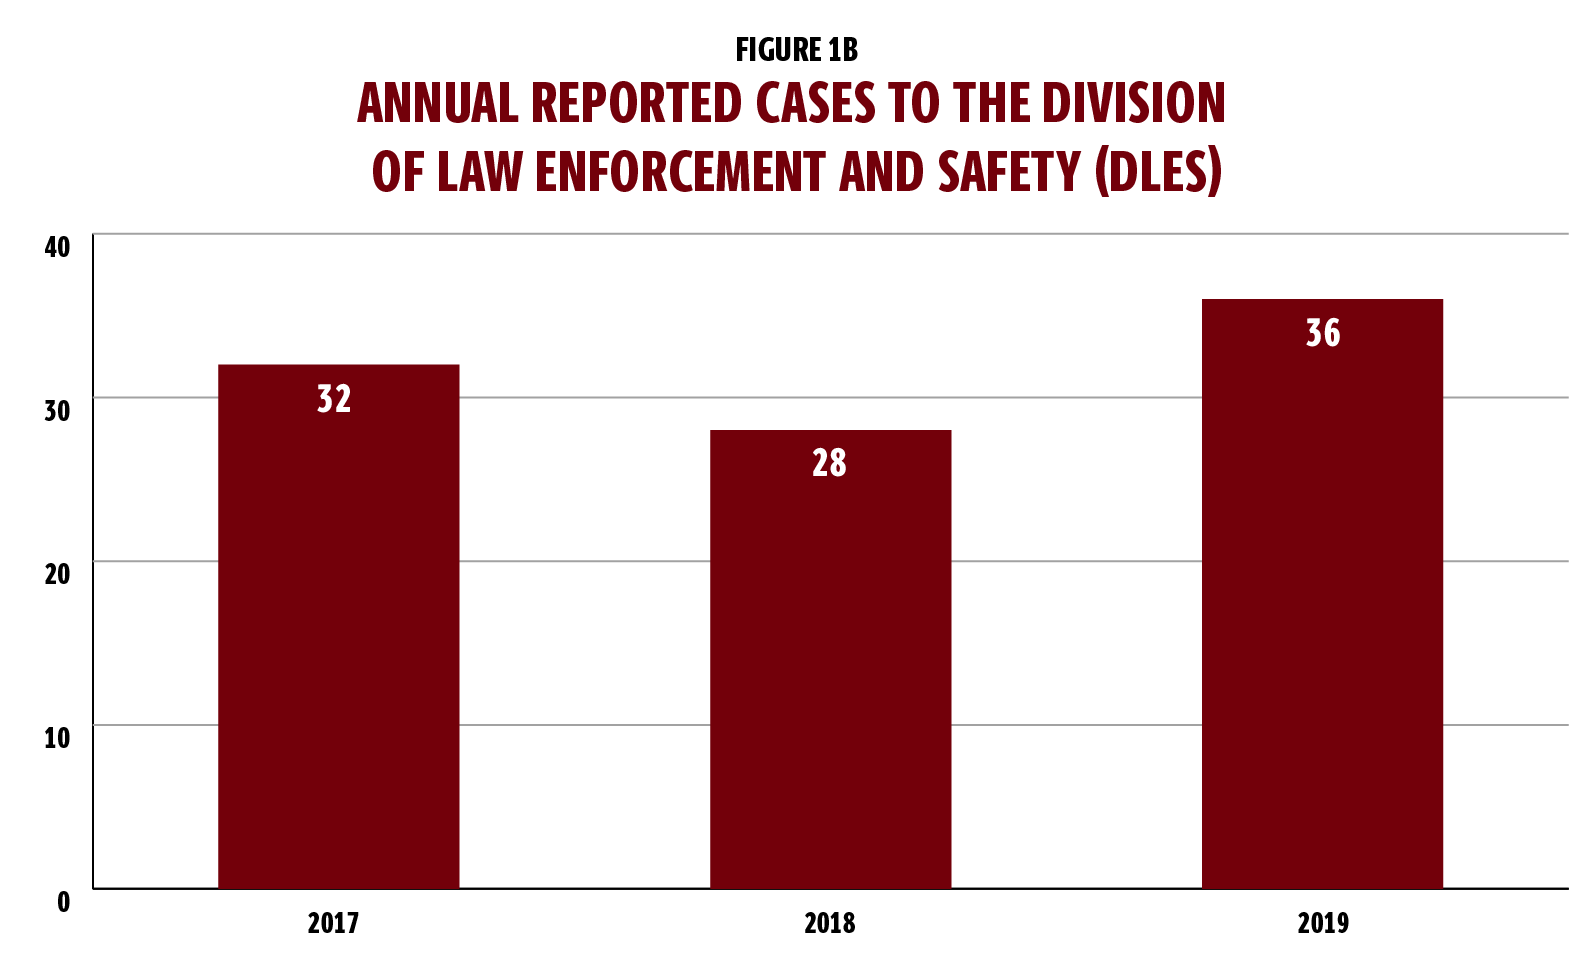 图1b是一个柱状图，显示了2017年和2019年向大学执法与安全部门报告的年度案件。图表显示，2017年有32例;2018年28例;2019年有36例。